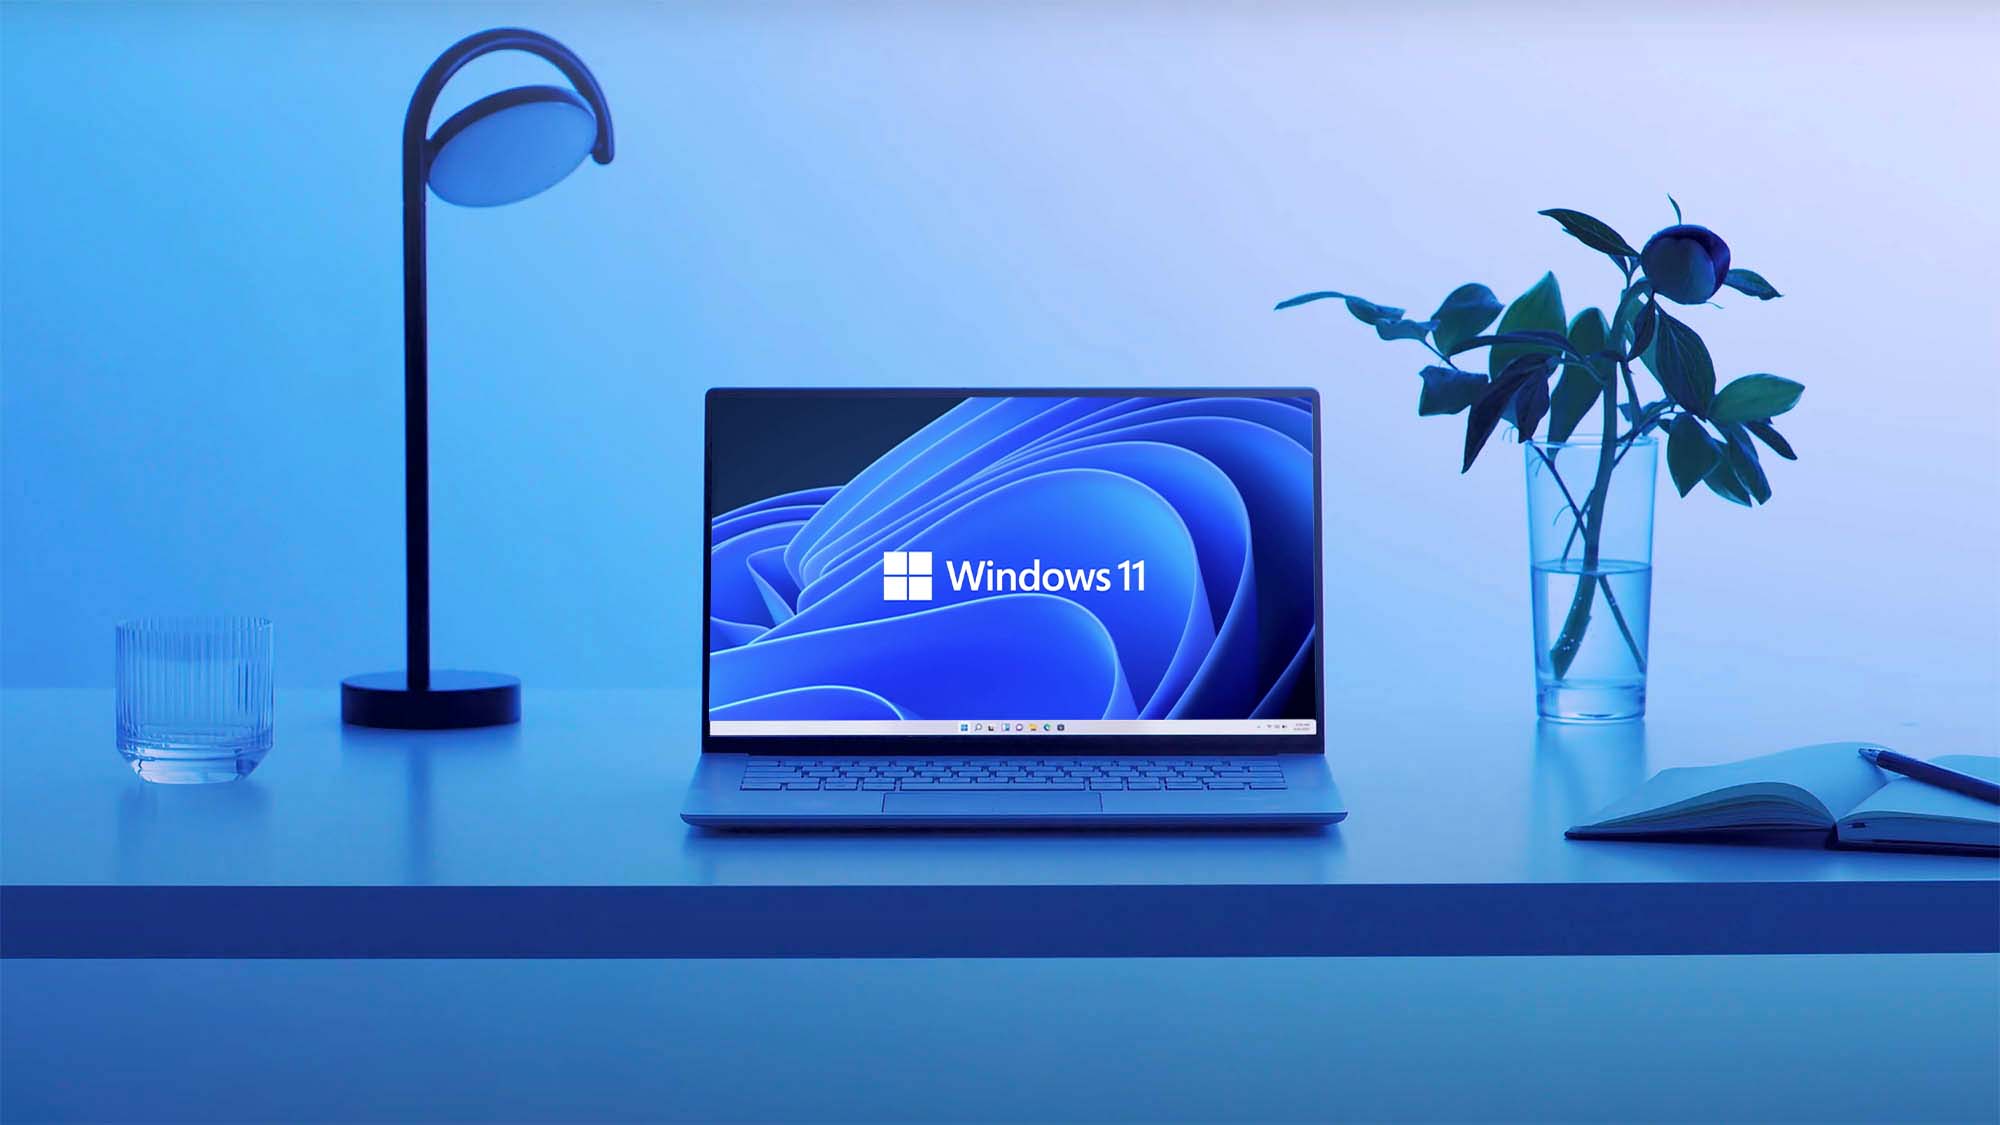 Bạn đang băn khoăn về cấu hình máy tính để có thể chạy được Windows 11 không? Đừng lo lắng, trang Digital Trends sẽ giúp bạn tìm hiểu về cấu hình yêu cầu để có thể trải nghiệm Windows 11 một cách mượt mà nhất. 